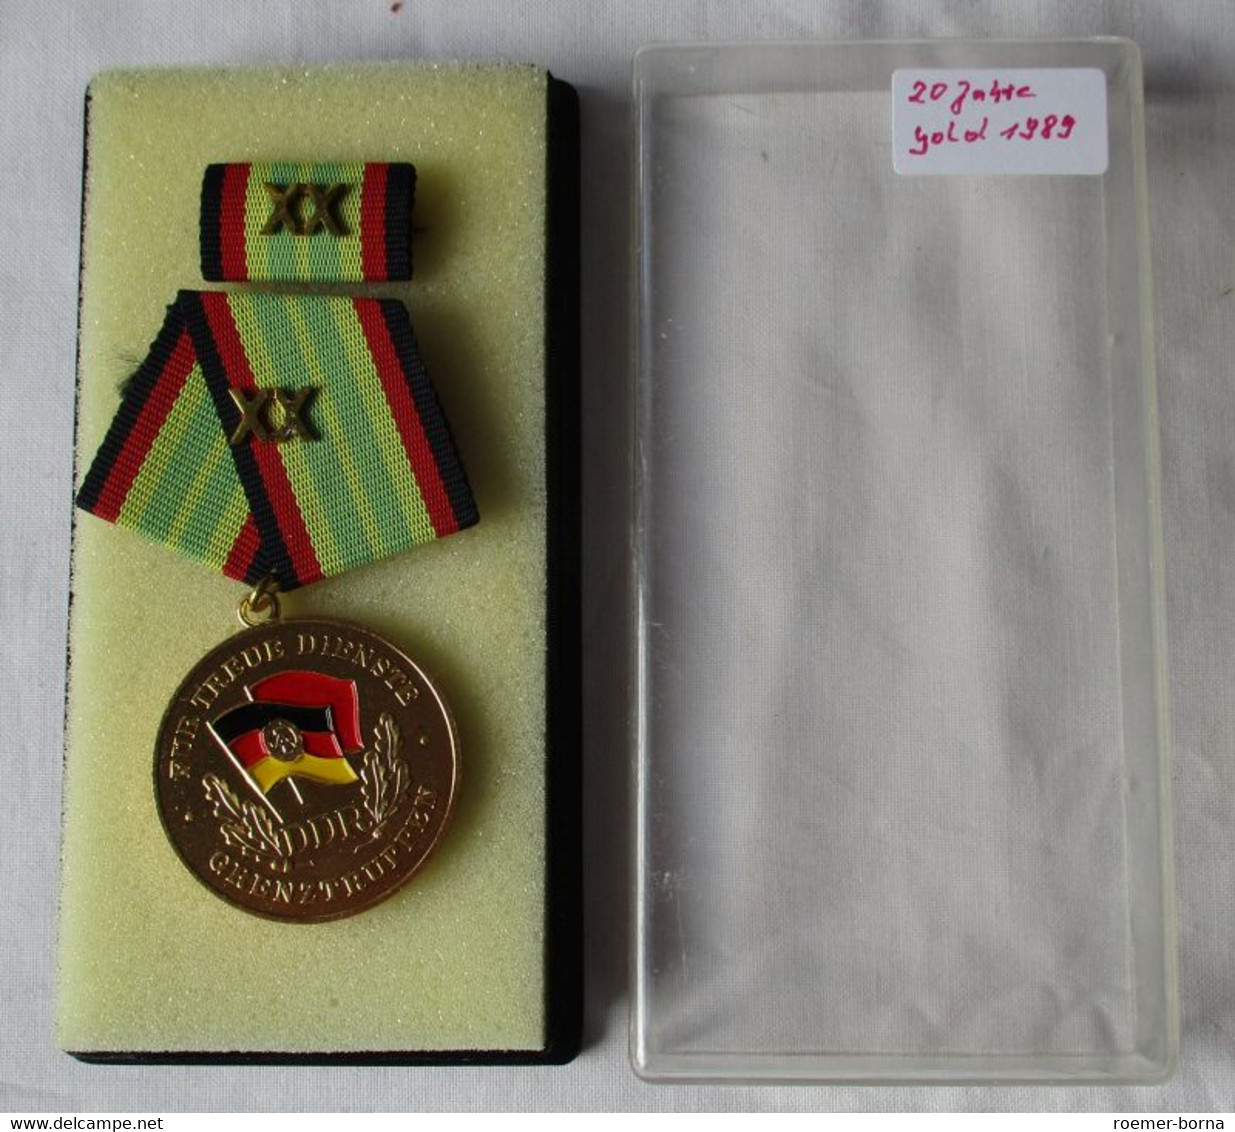 Medaille Für Treue Dienste In Den Grenztruppen Der DDR Gold F. 20 Jahre (153910) - RDA